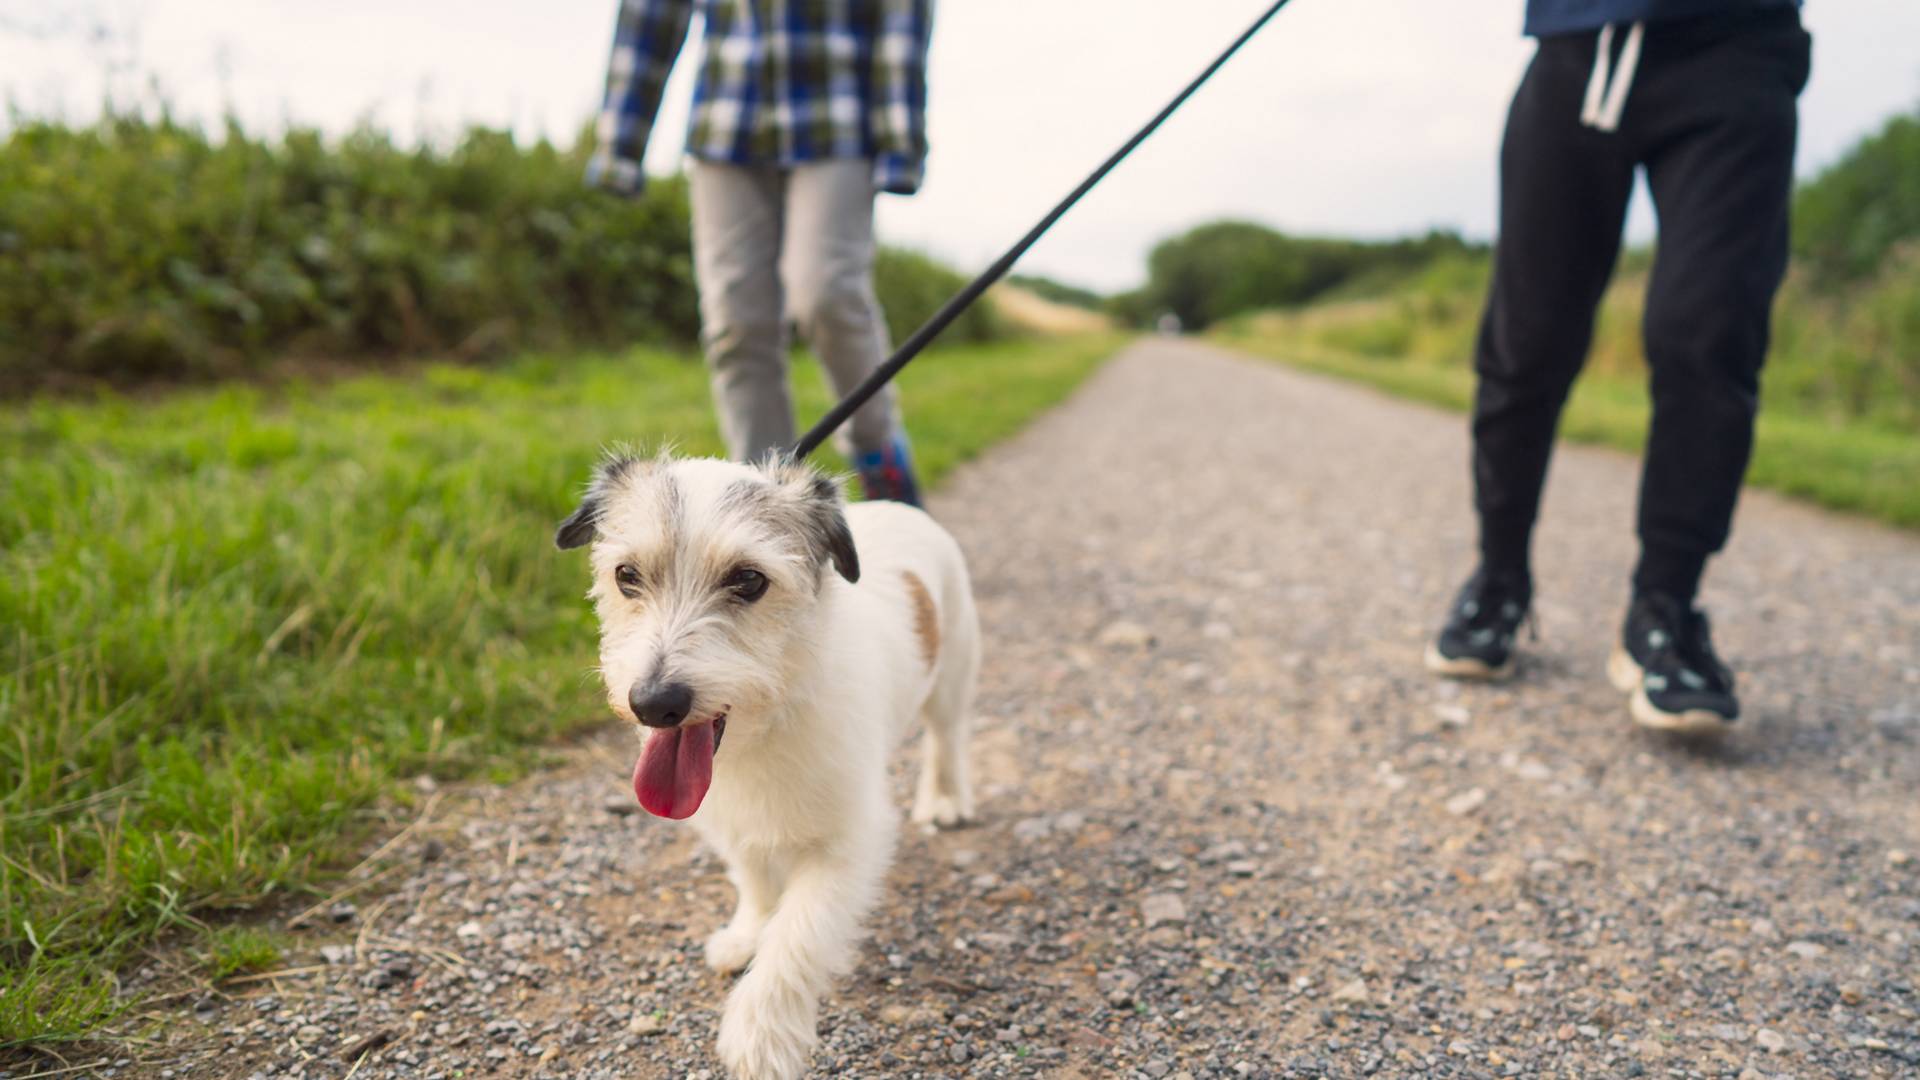 Kiakadtak a németek: törvénybe foglalnák, napi hány órát kötelesek kutyájukat sétáltatni a gazdák